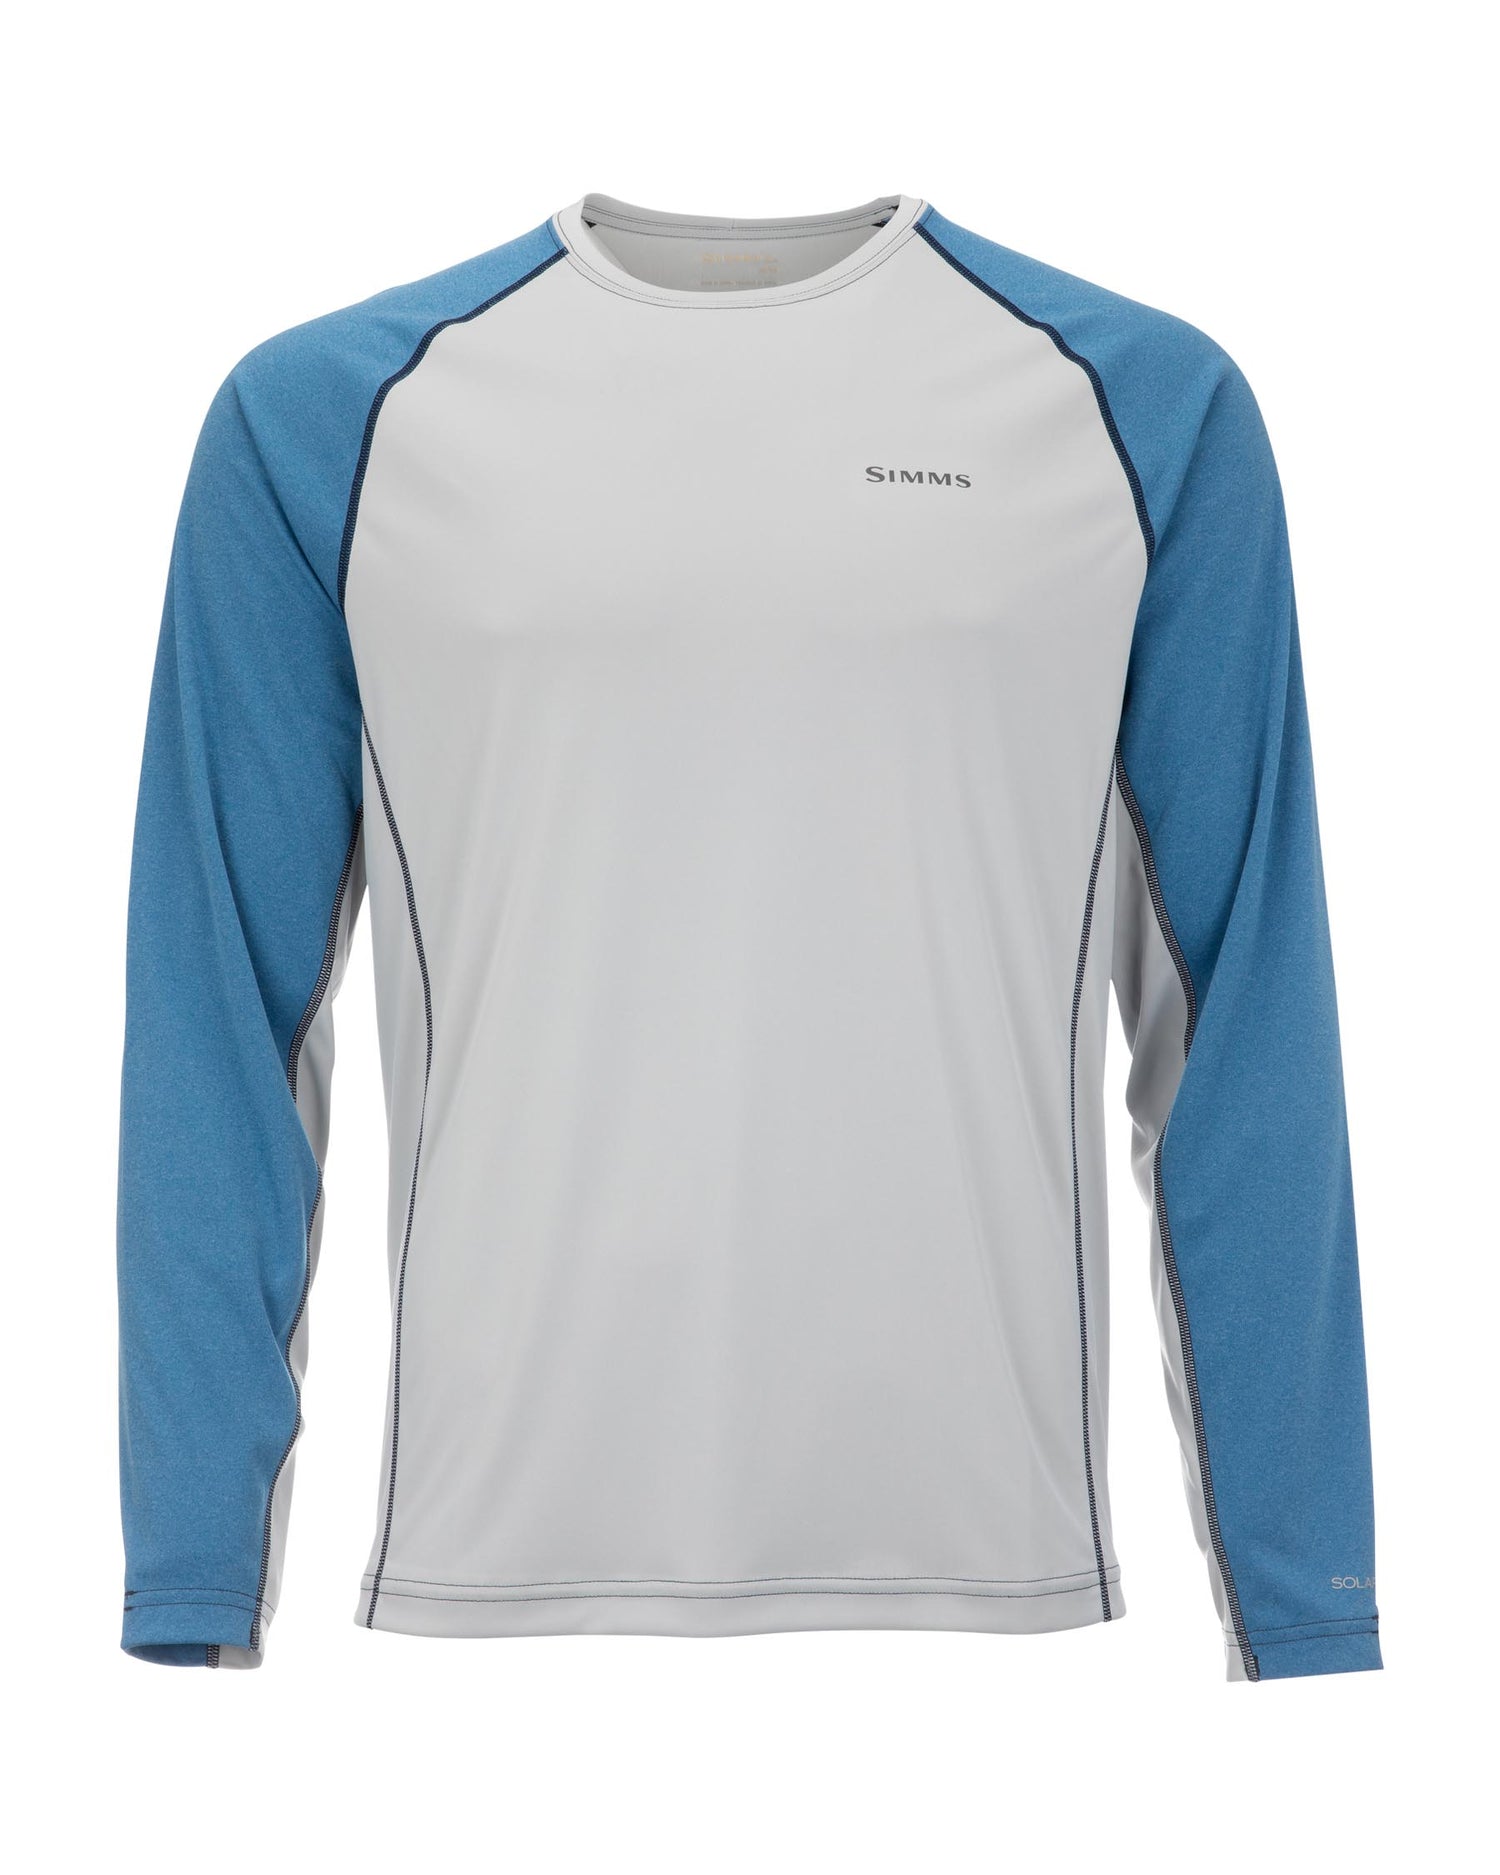 M's SolarFlex® Crewneck Shirt - Solid